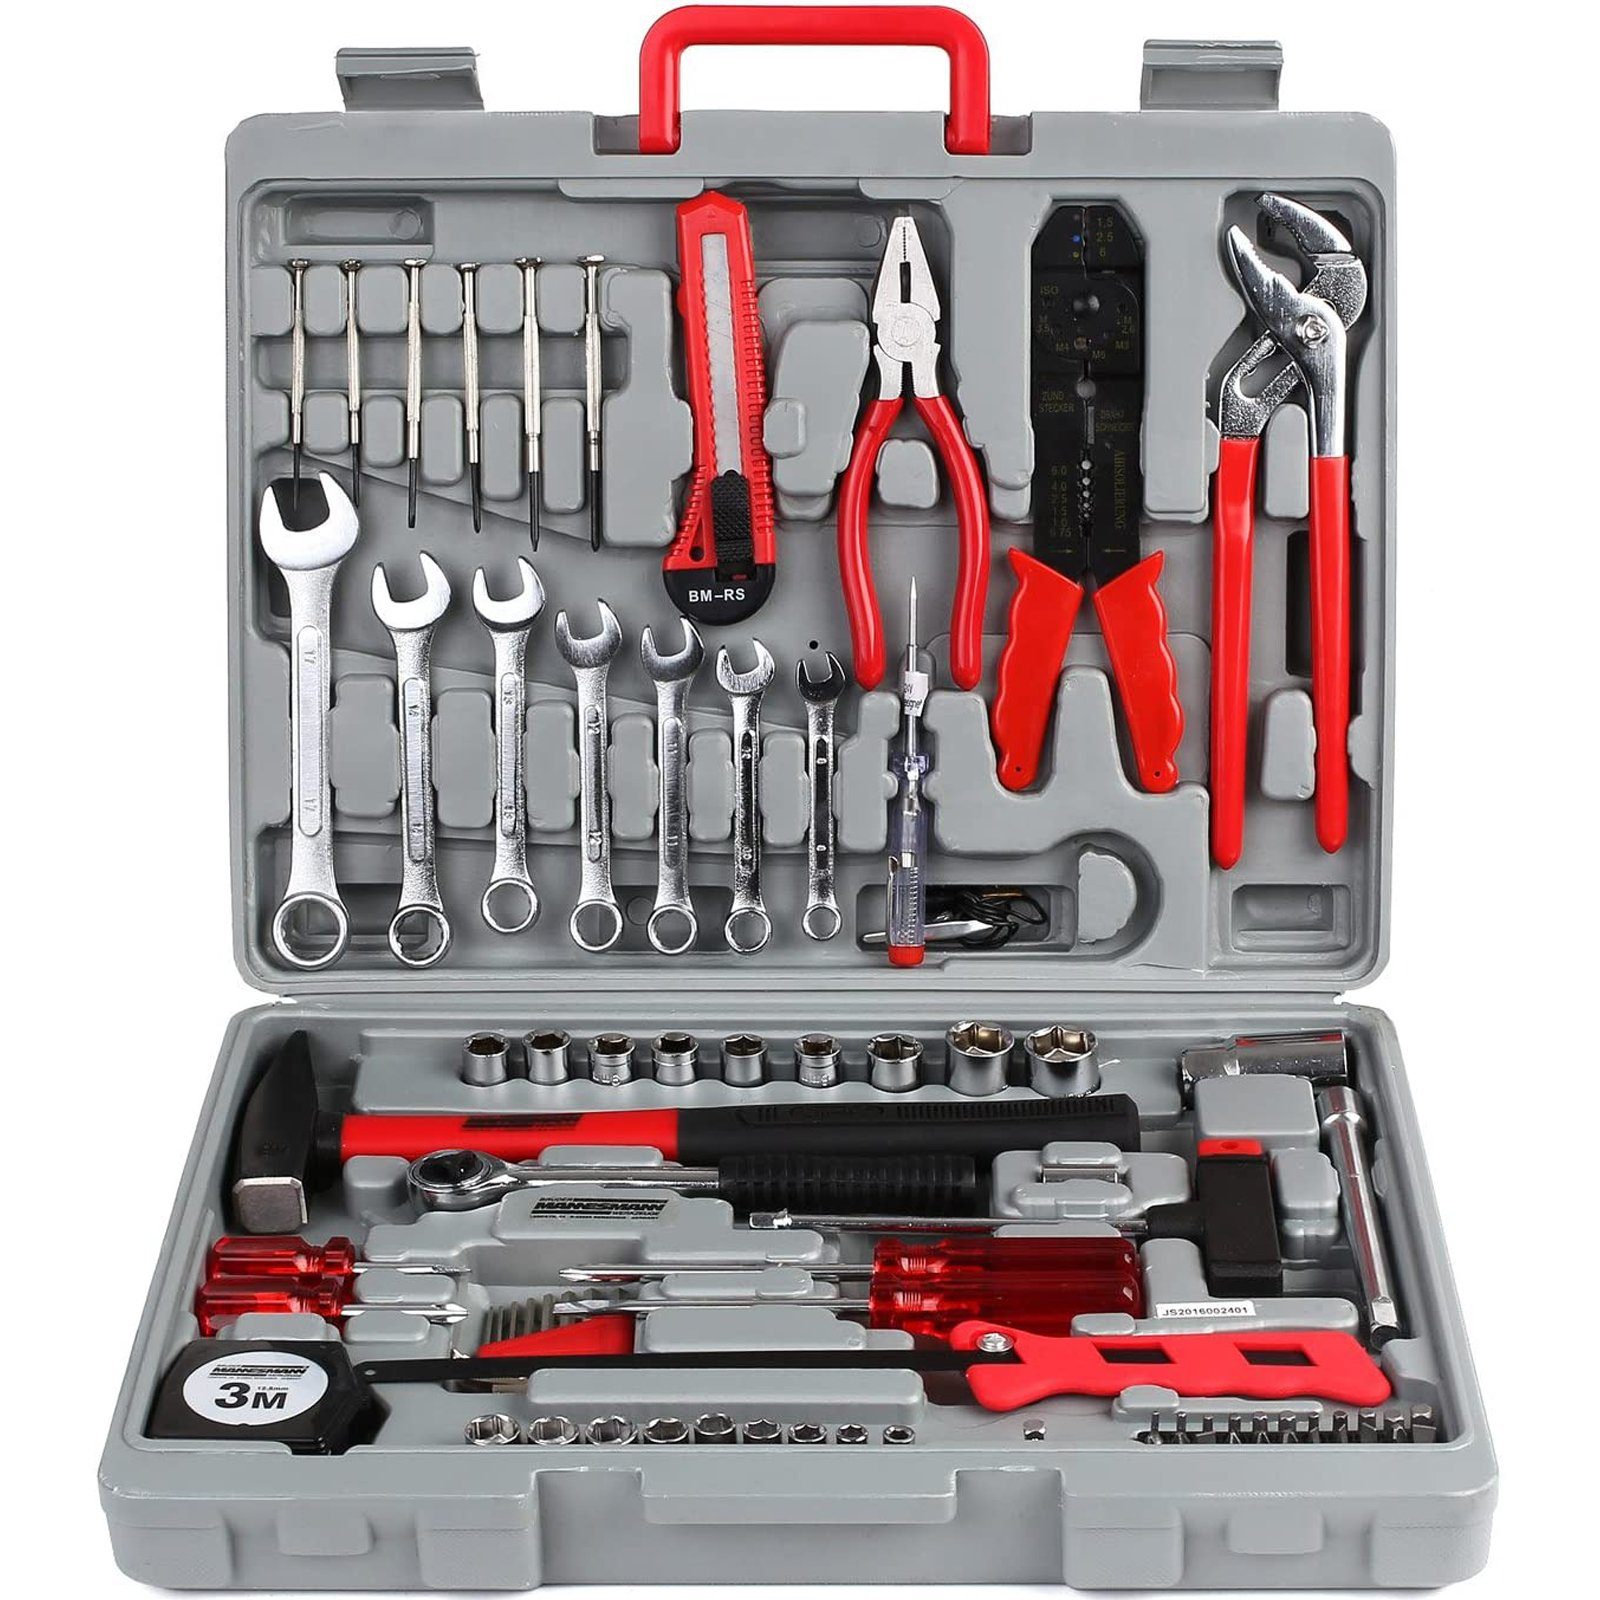 Femor Werkzeugset, (Set), 555 teilig Werkzeugkoffer im Koffer, Werkzeug-Set  Ideal Weihnachtsgeschenk für den Haushalt, Werkzeugkasten für den  Haushaltsbereich Universal-Haushalts-Werkzeugkoffer